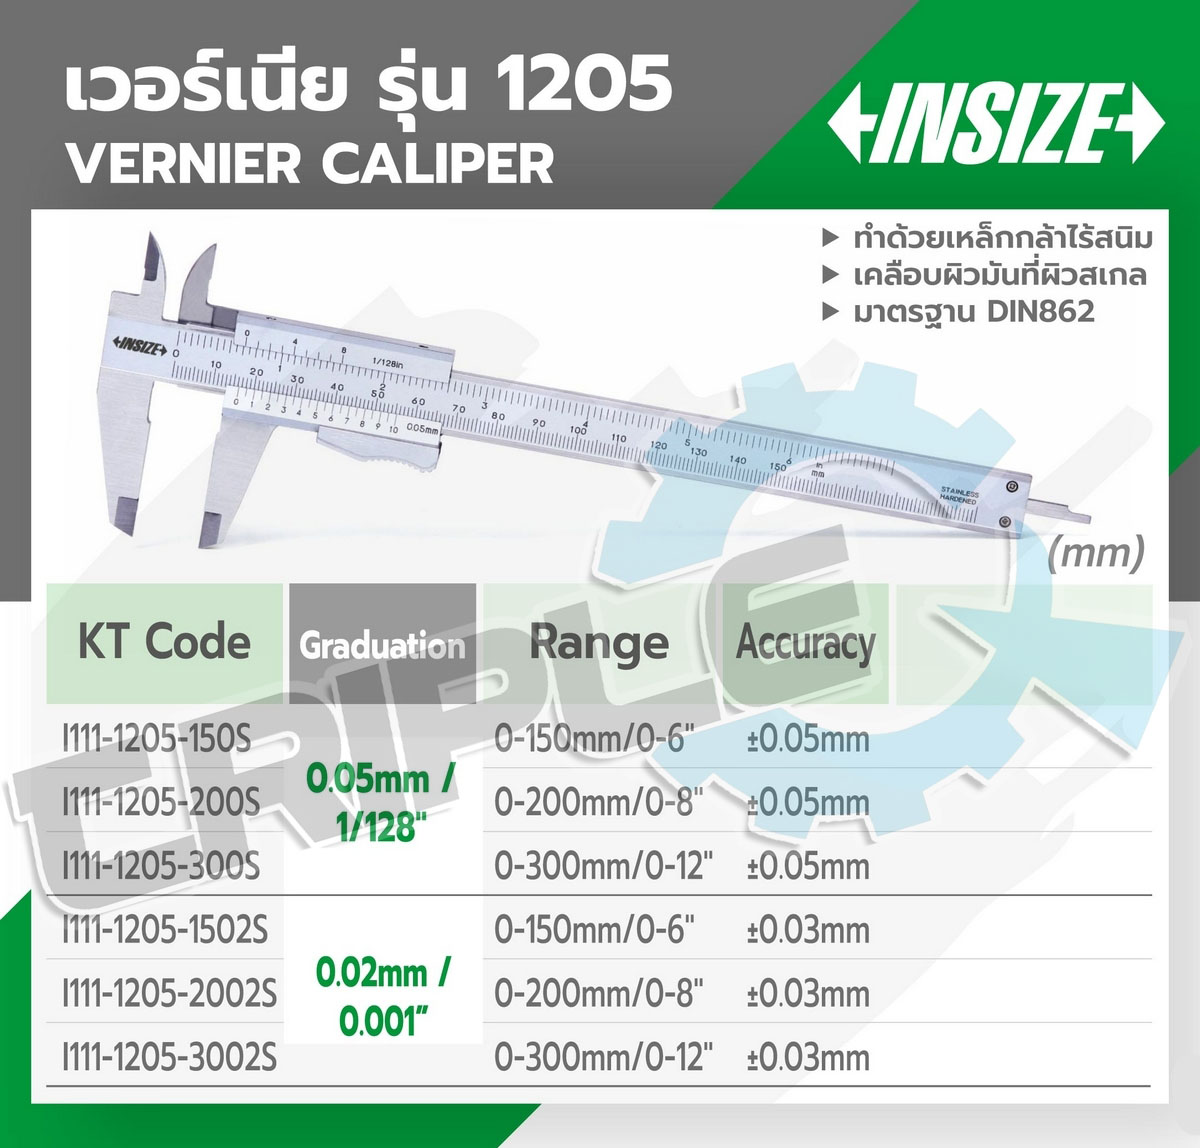 INSIZE - เวอร์เนียร์คาลิปเปอร์ (Vernier Calipers) รุ่น 1205-200S ขนาด 8 นิ้ว ระยะวัด 0-200 มม. (0-8 นิ้ว) G0.05mm / 1/128” ค่าความละเอียด 0.01 มม. (0.0005 นิ้ว) ความแม่นยำ + 0.05 มม. (0.001 นิ้ว)